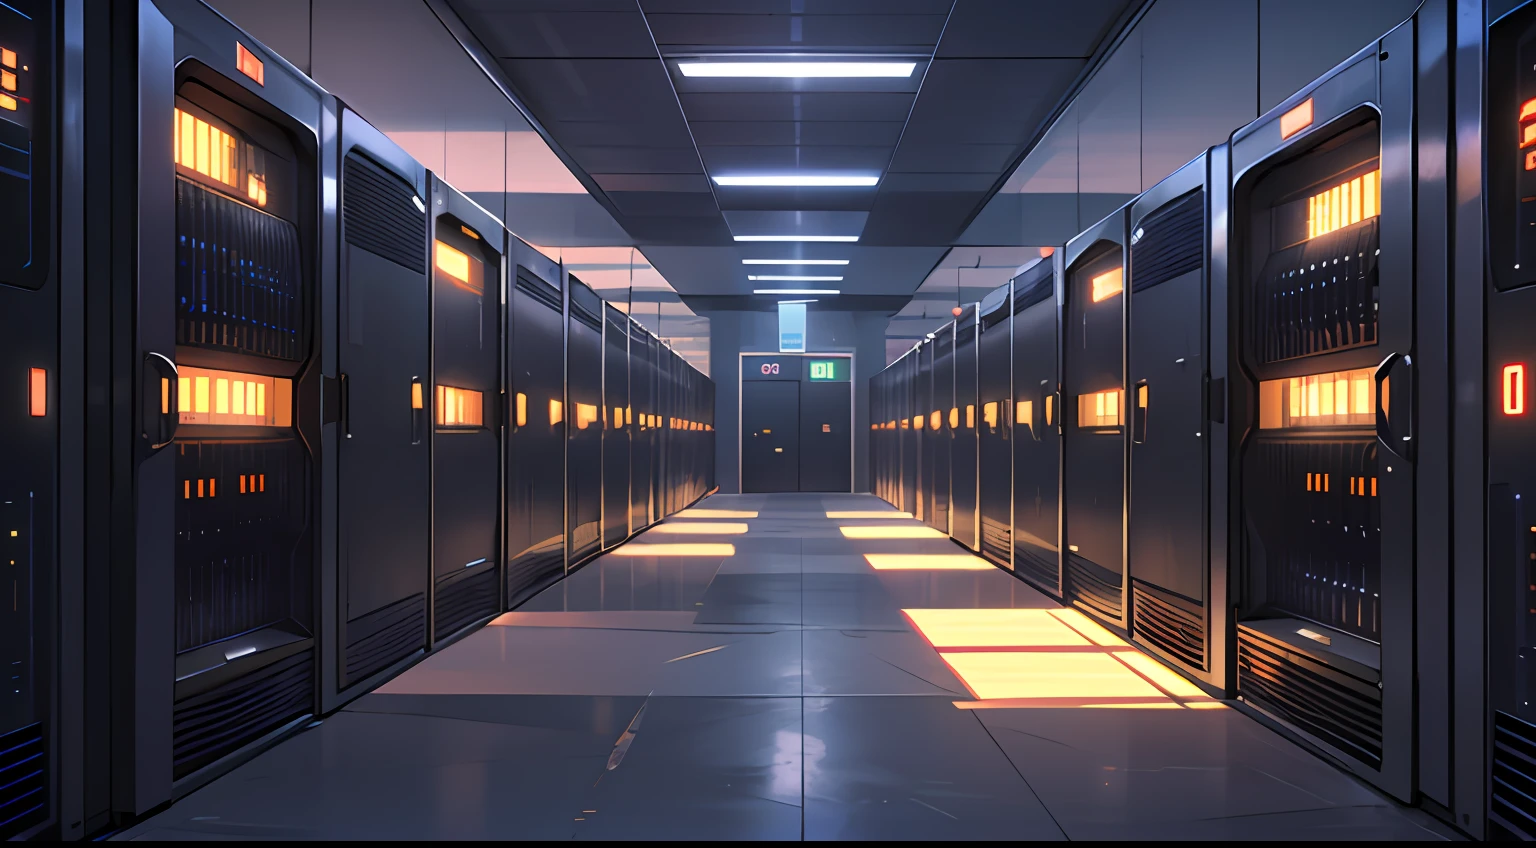 um corredor mal iluminado com fileiras de dados e telas de computador, o plano de fundo é a sala do servidor de dados, invadindo o mainframe, espaço cibernético, em data center realista, 3840x2160, 3840 x 2160, fundo do corredor da nave espacial, arquitetura cibernética, ciberespaço surreal, em data center detalhado